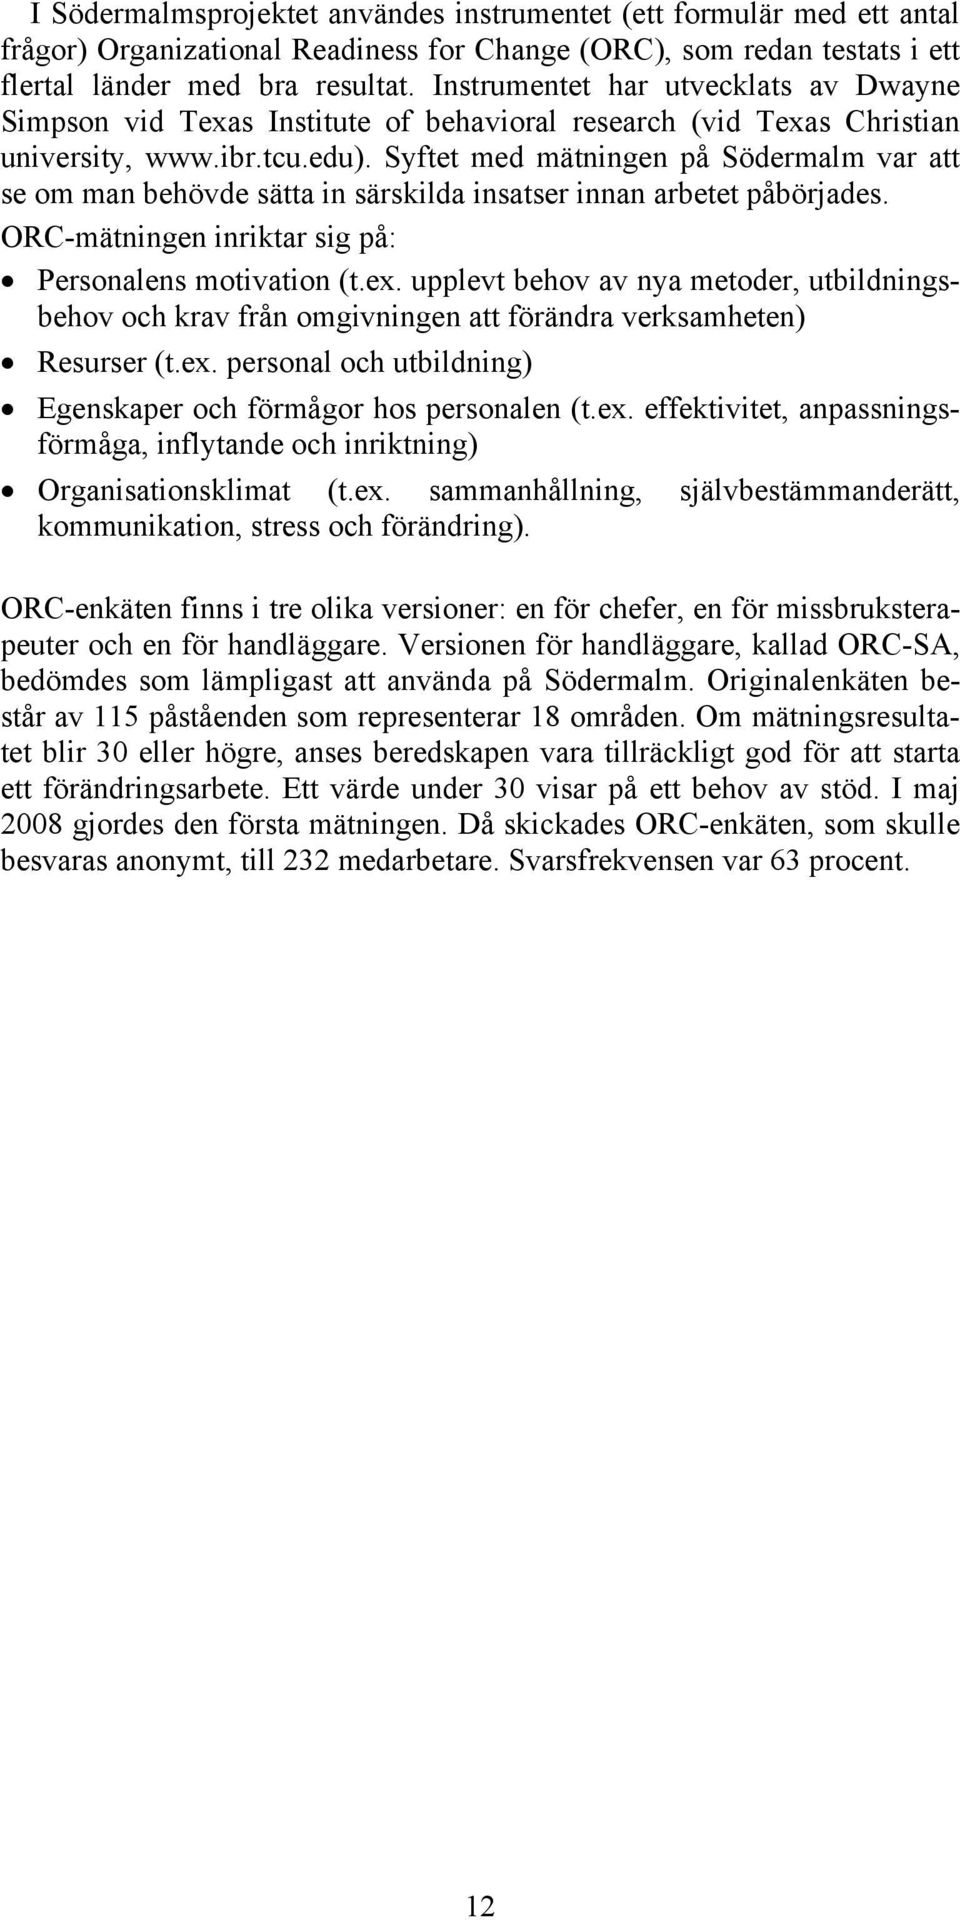 Syftet med mätningen på Södermalm var att se om man behövde sätta in särskilda insatser innan arbetet påbörjades. ORC-mätningen inriktar sig på: Personalens motivation (t.ex.